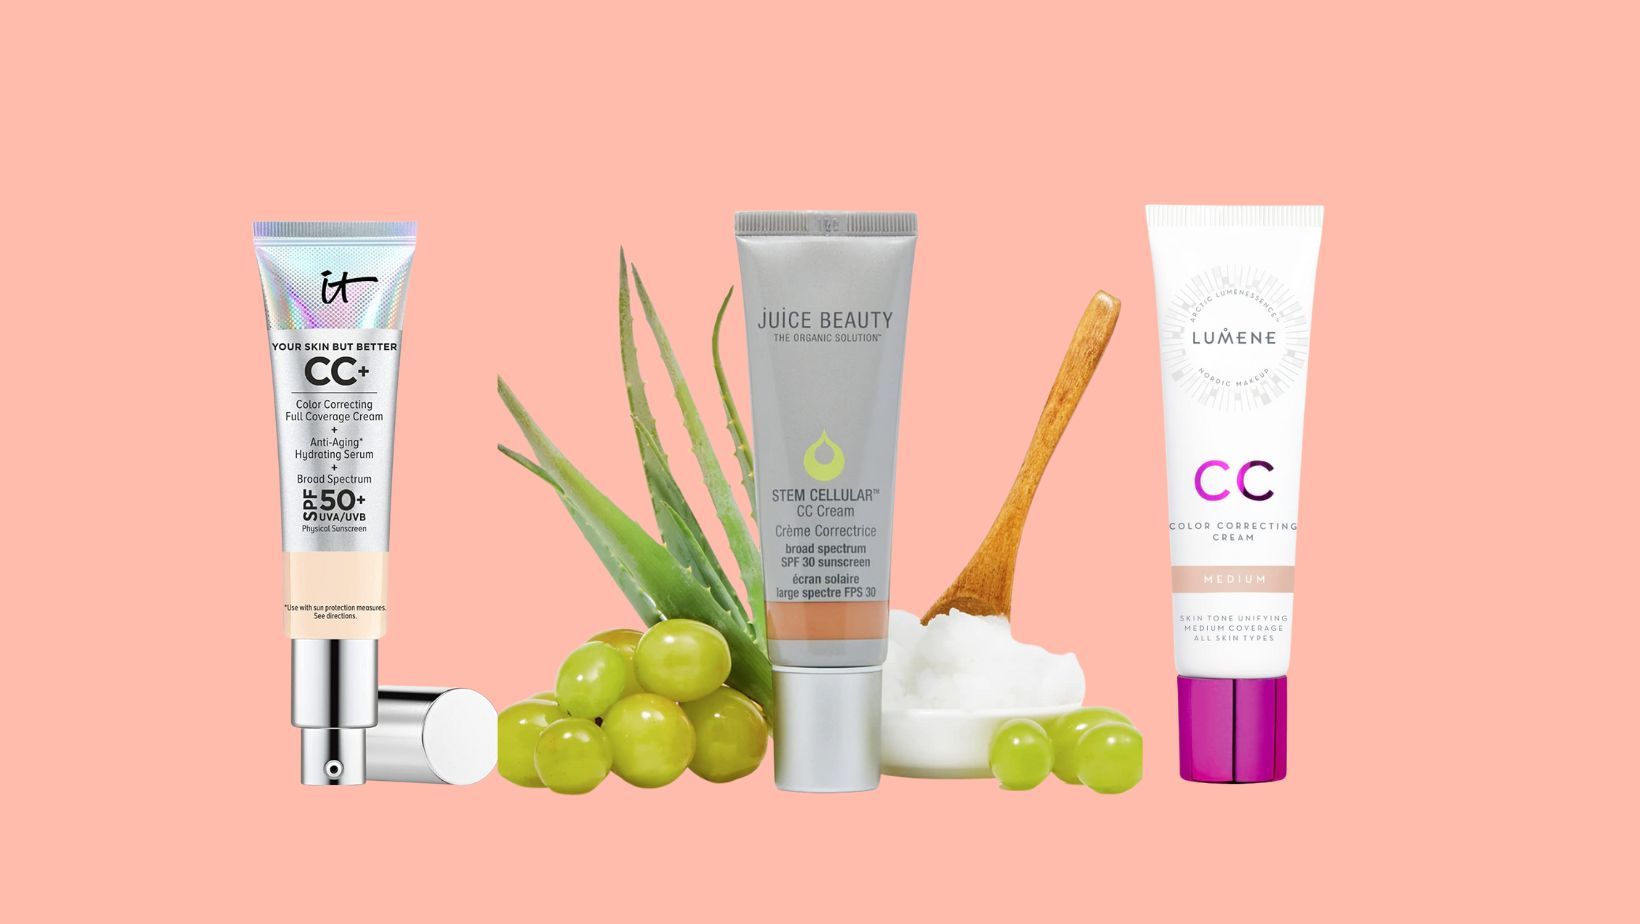 CC Cream for Mature Skin